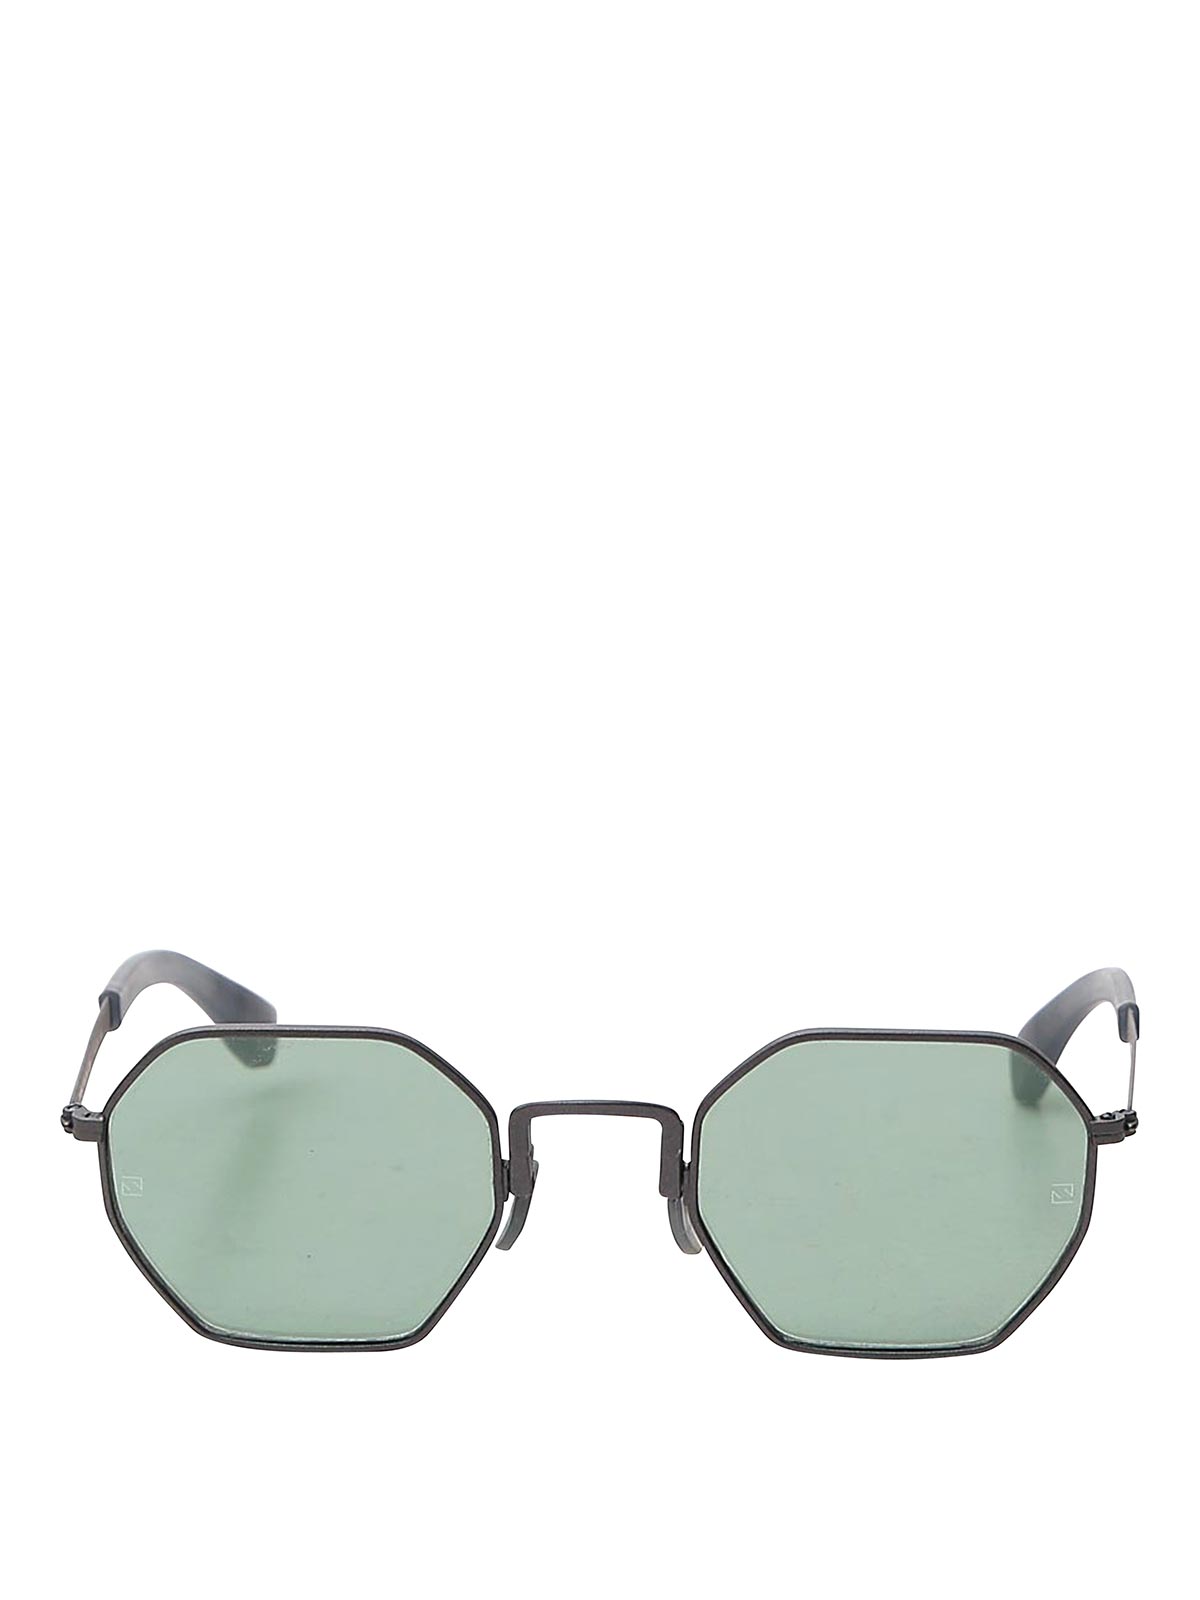 Movitra Sunglasses In Green